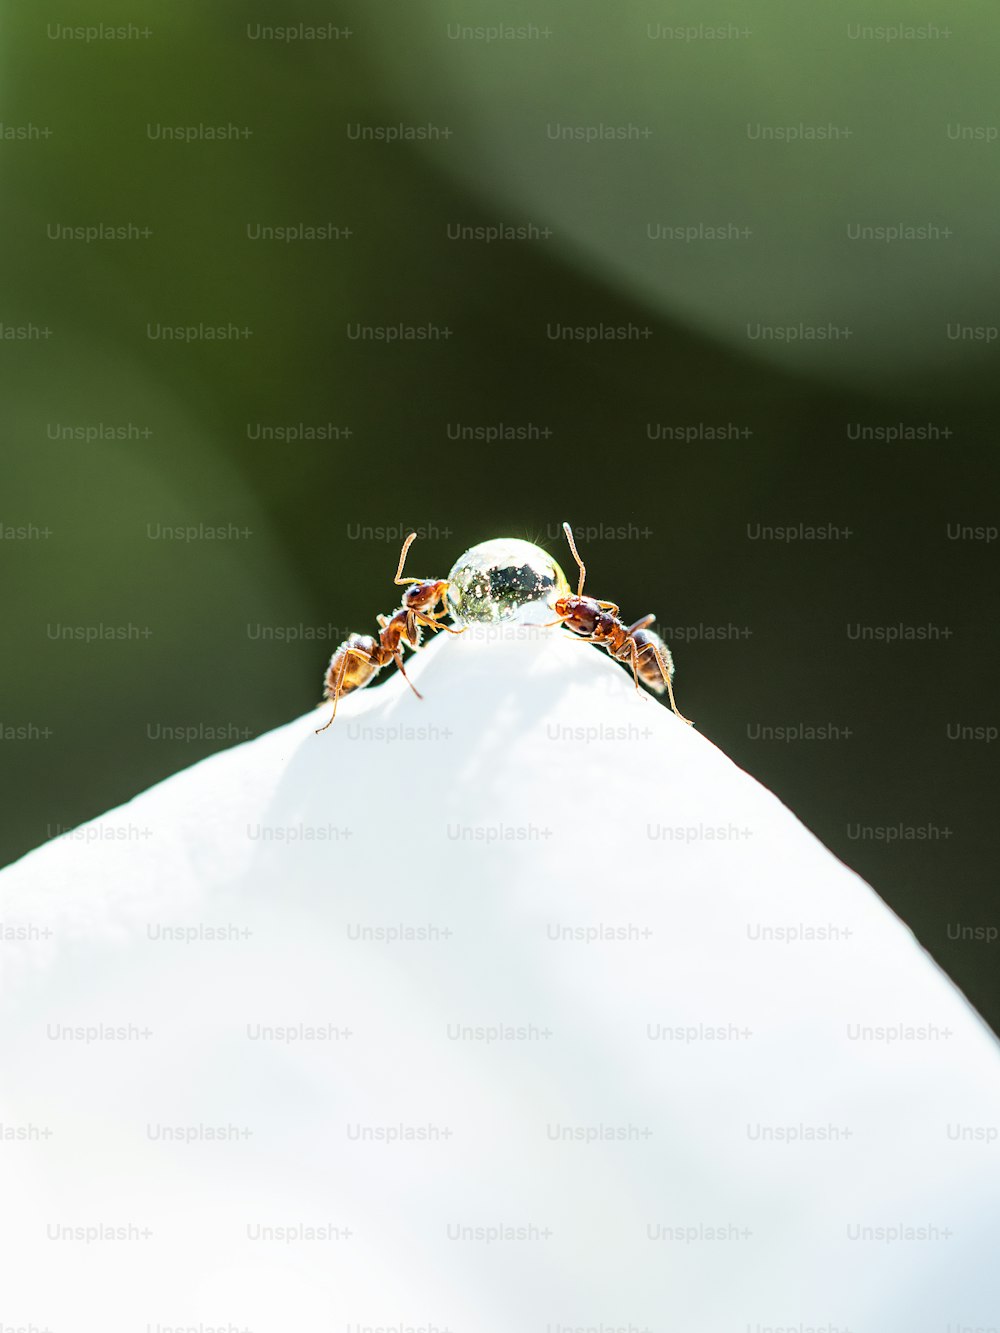 Un primo piano di due piccoli insetti su una superficie bianca